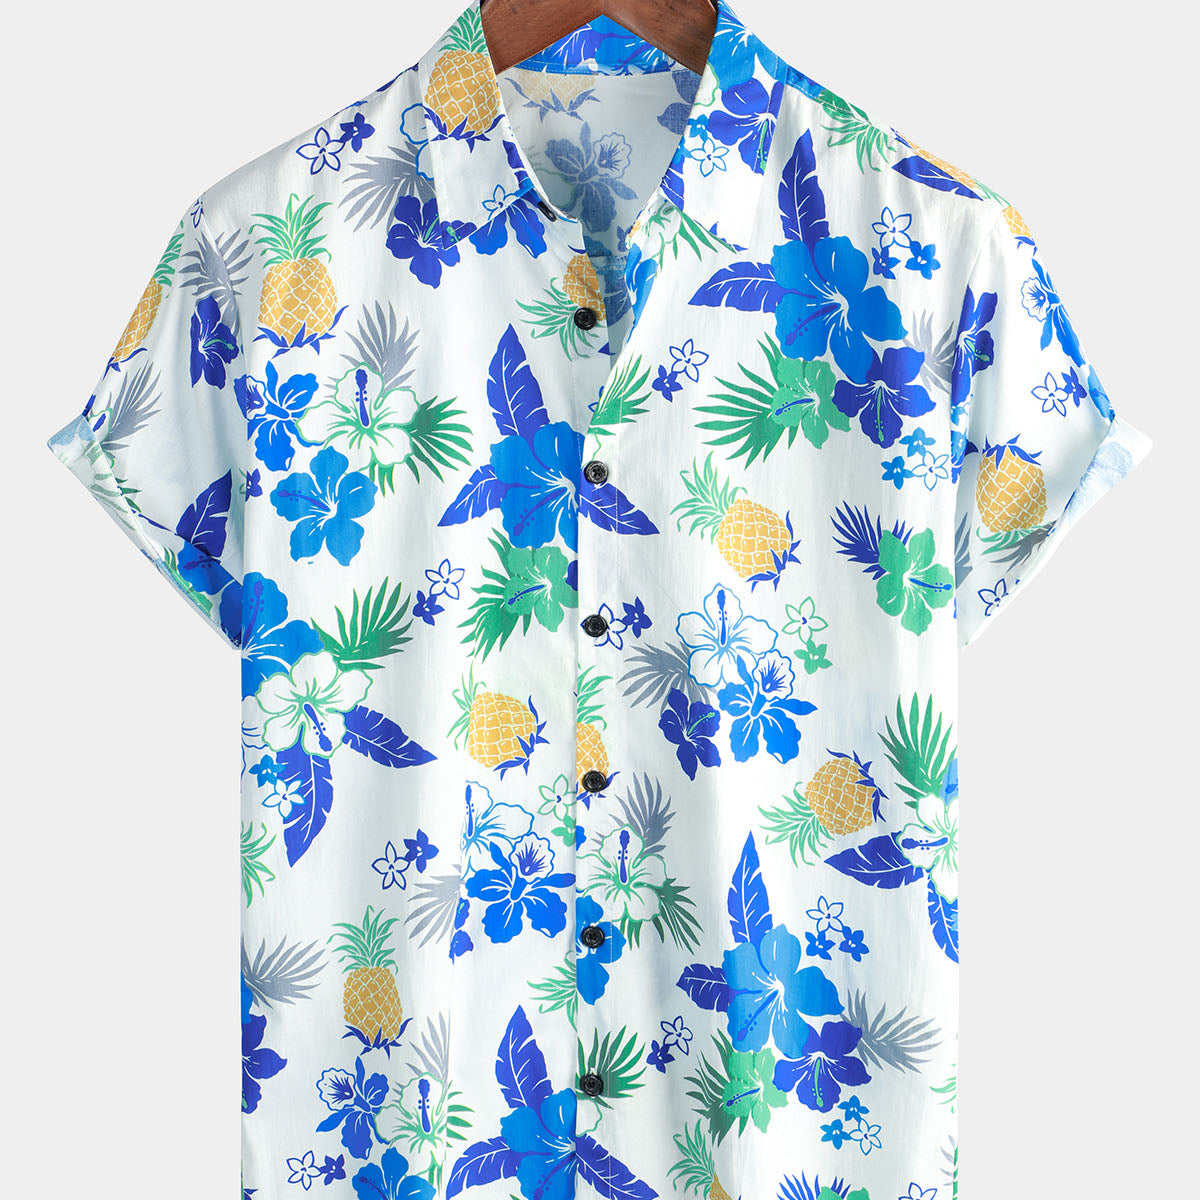 Men's Pineapple Floral Cotton Fruit Tropical Button Up Short Sleeve Beach Blue Hawaiian Shirt